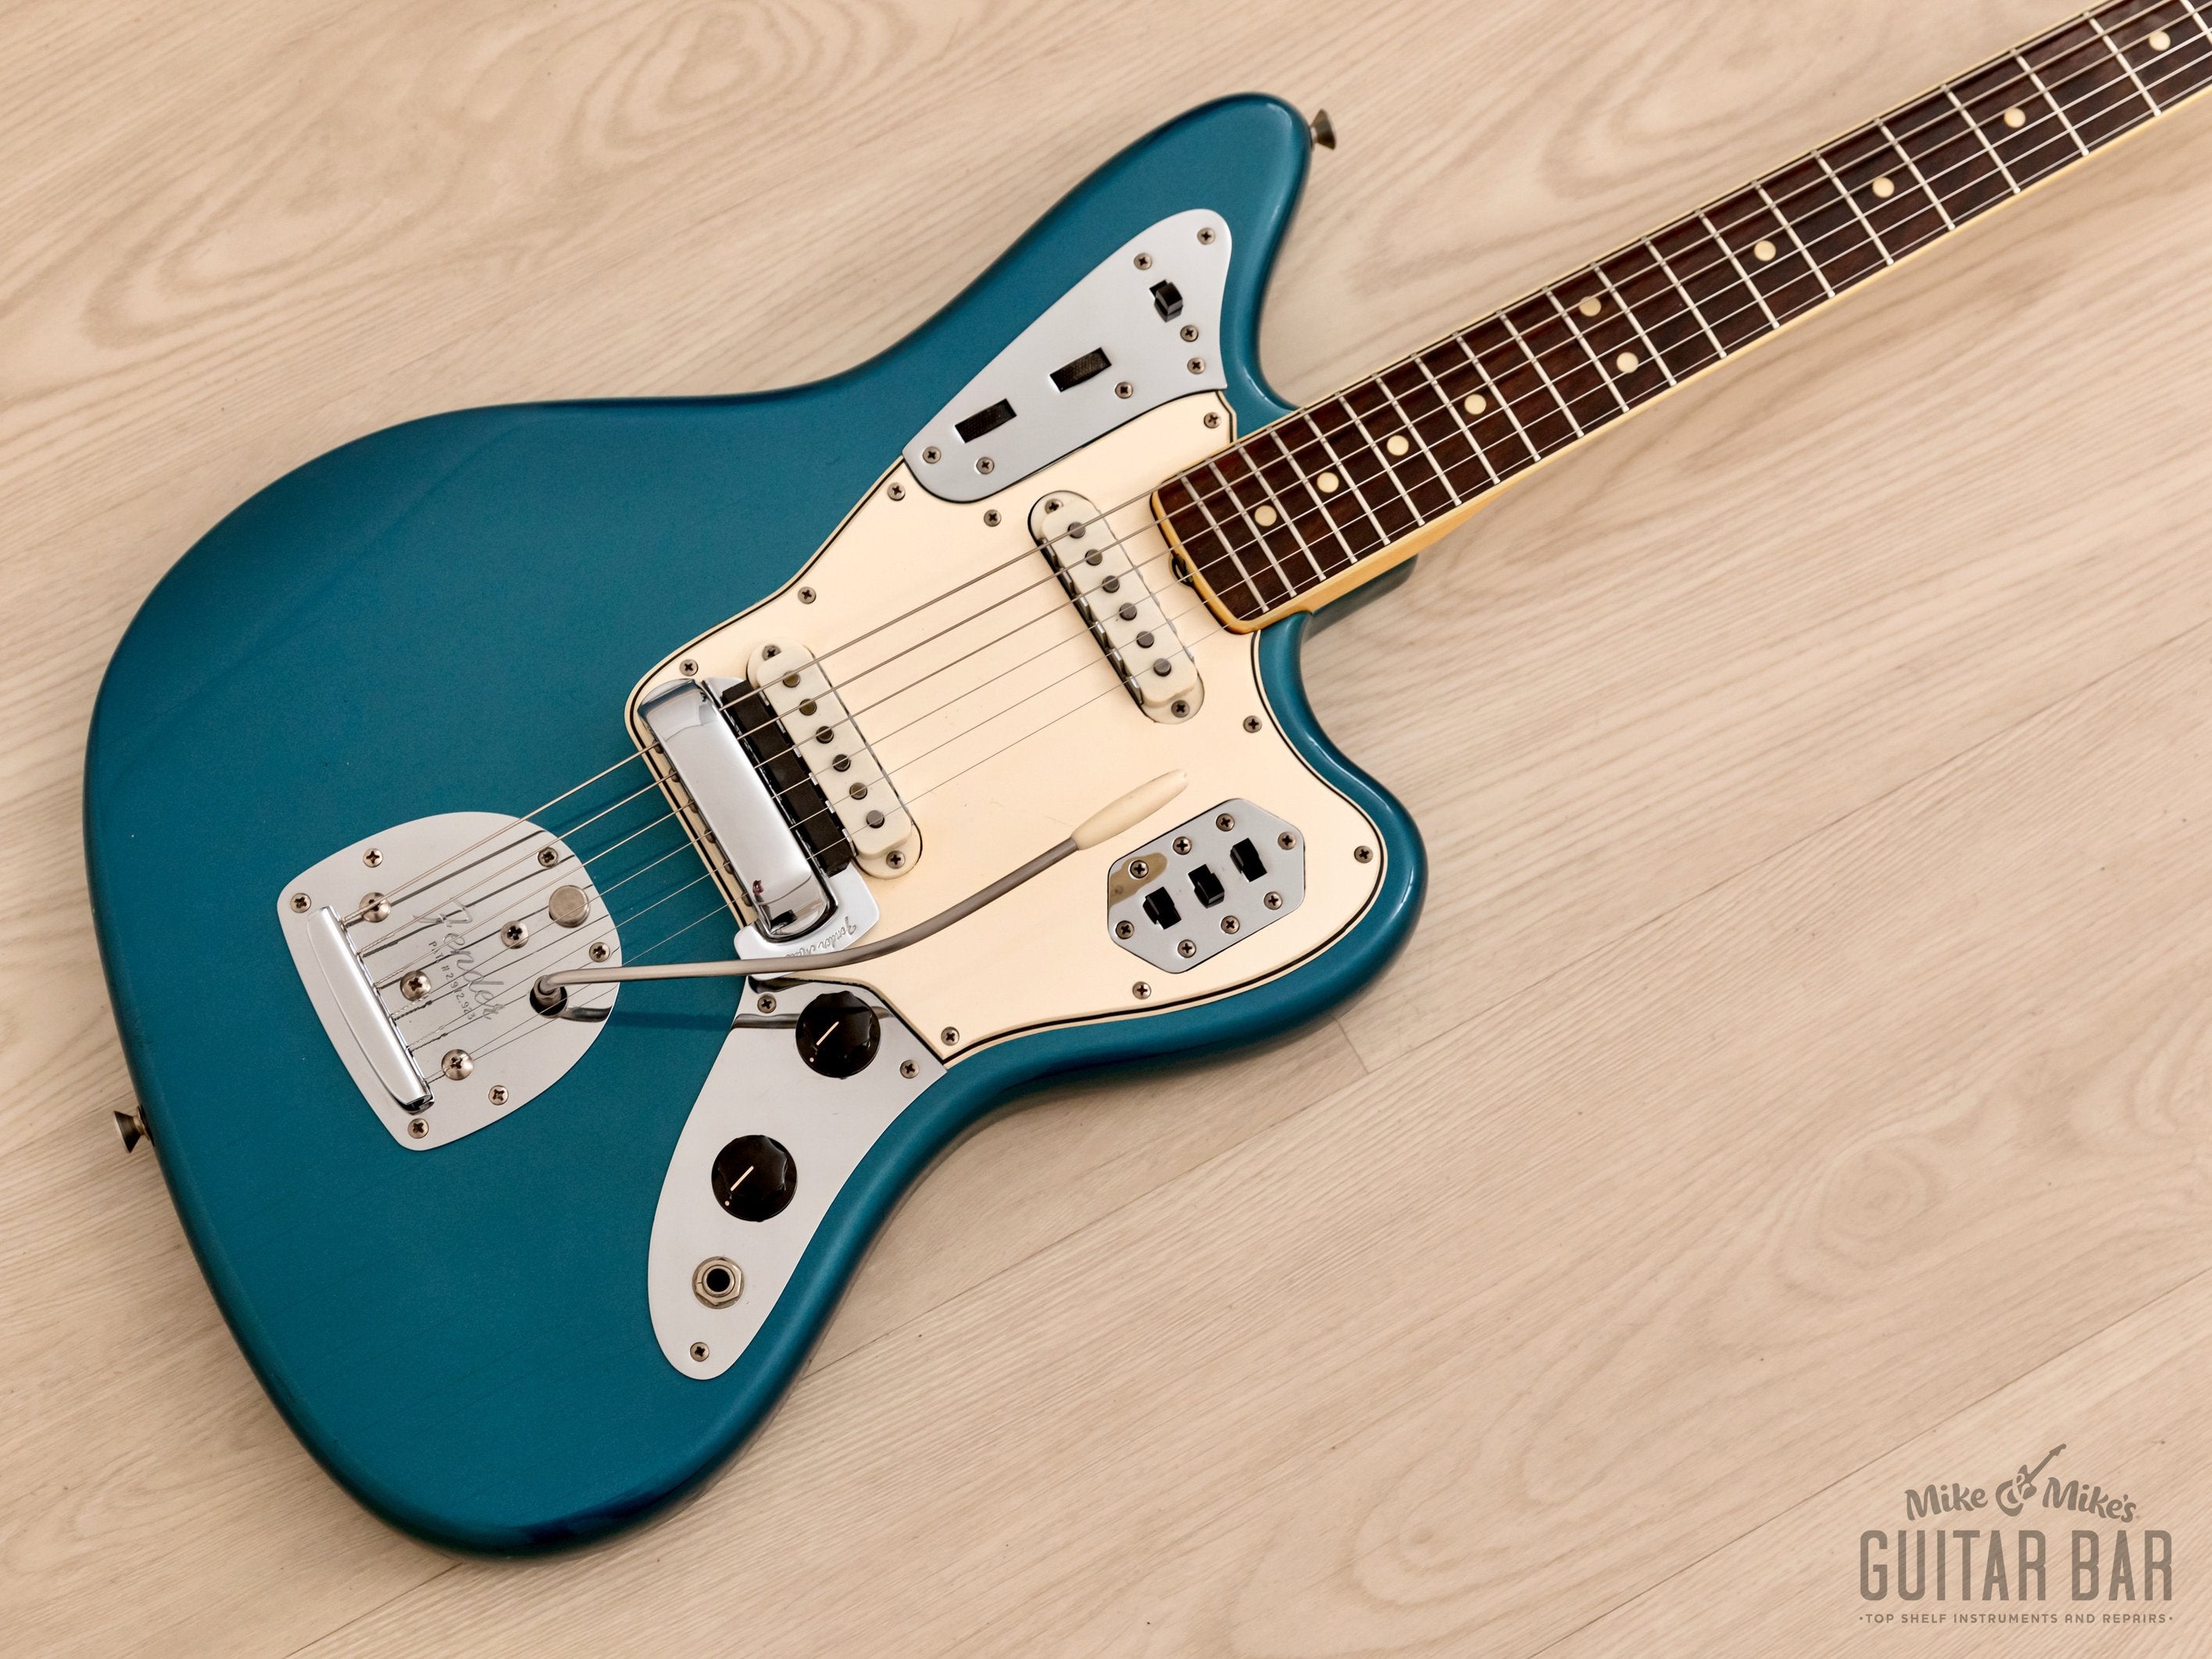 1966 Fender Jaguar Vintage Offset Guitar Lake Placid Blue 100% Original w/ Case